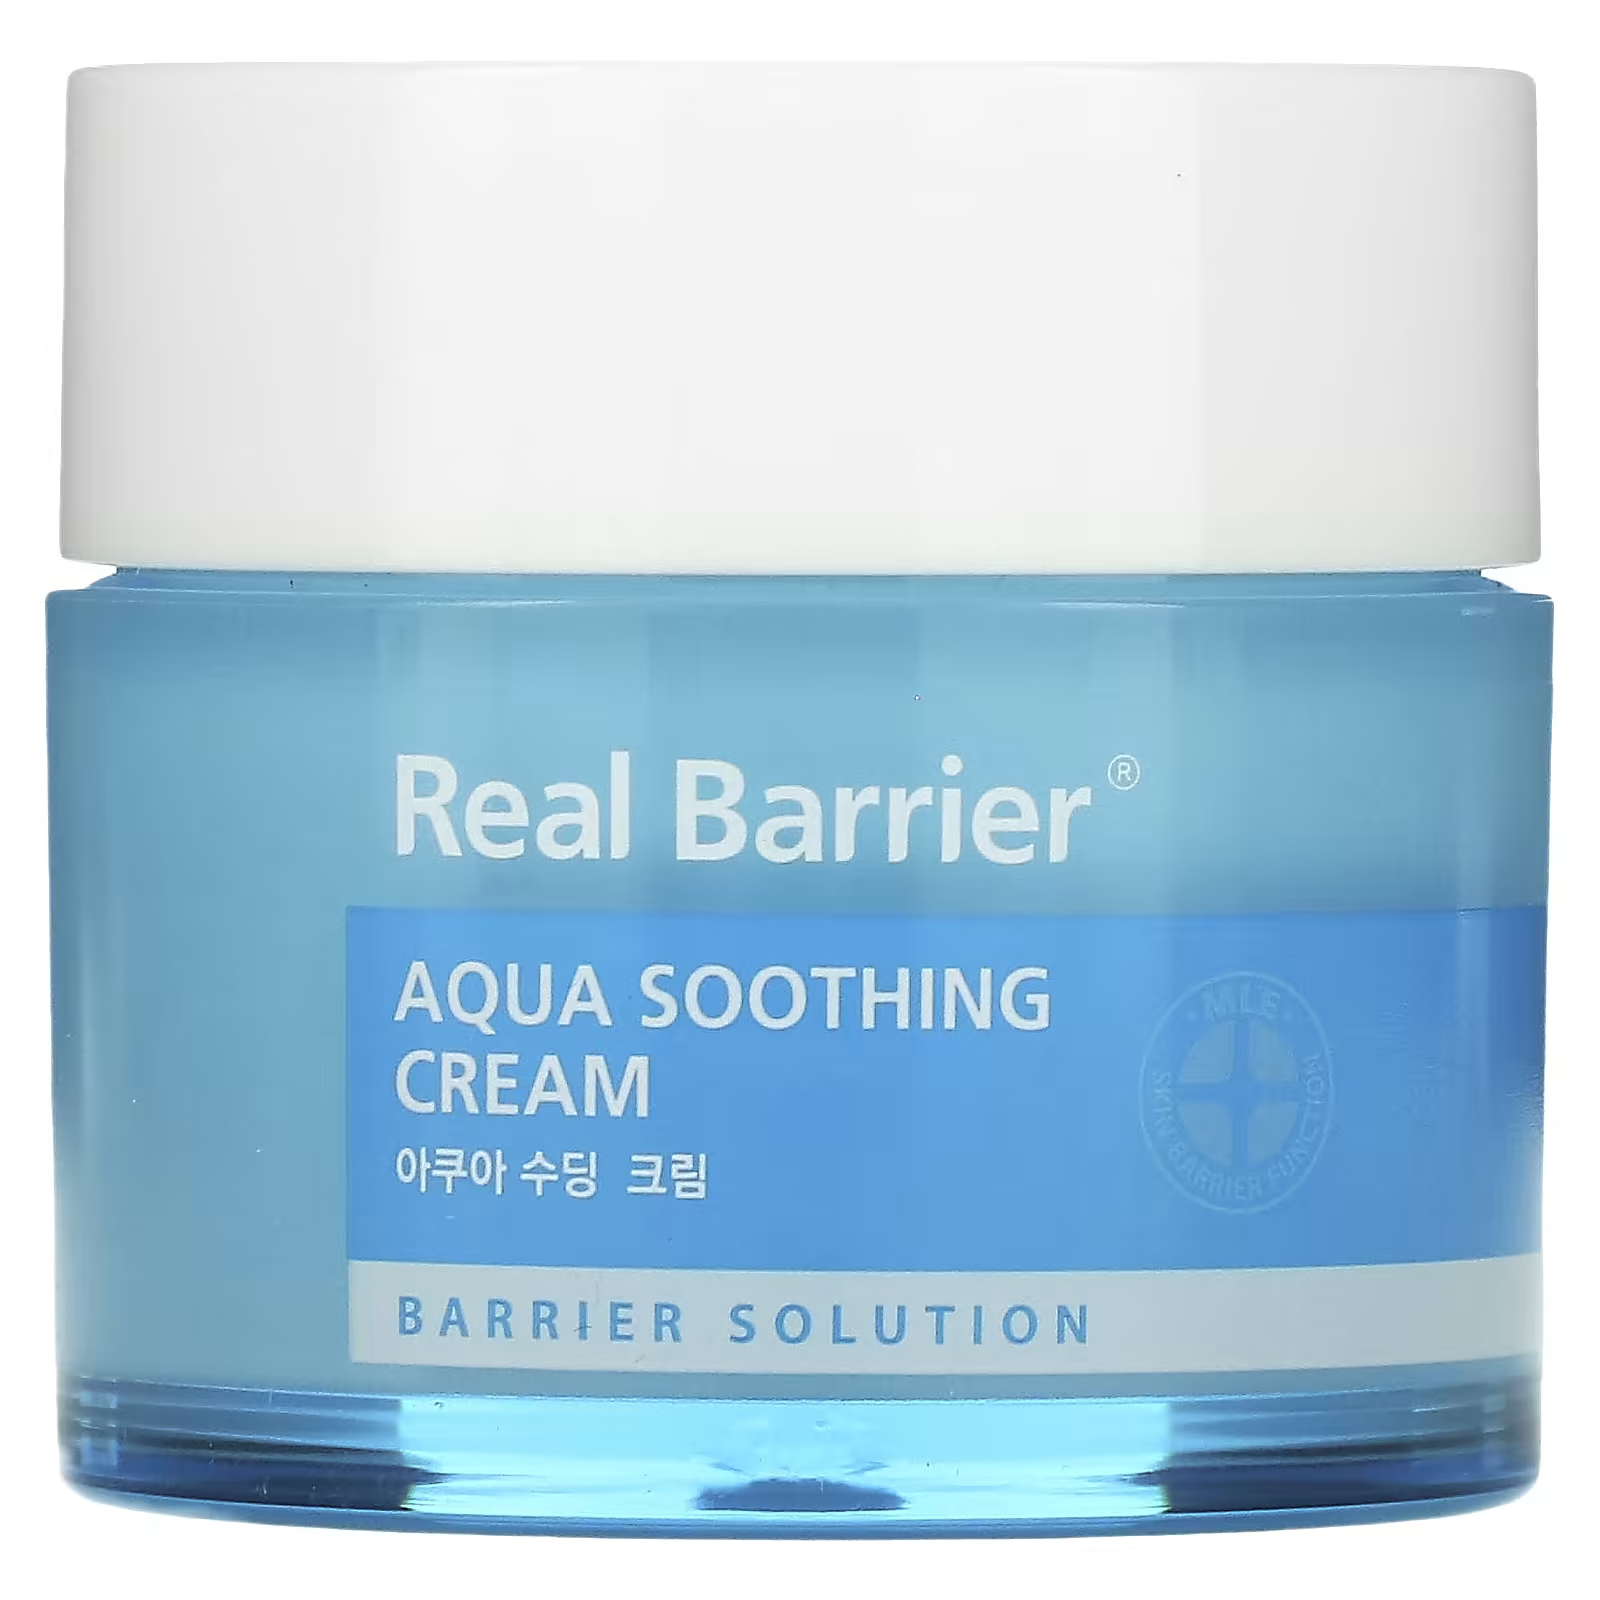 Крем Real Barrier Успокаивающий Aqua Soothing Cream, 50мл судокрем эксперт крем барьерный 8% 125 г sudocrem